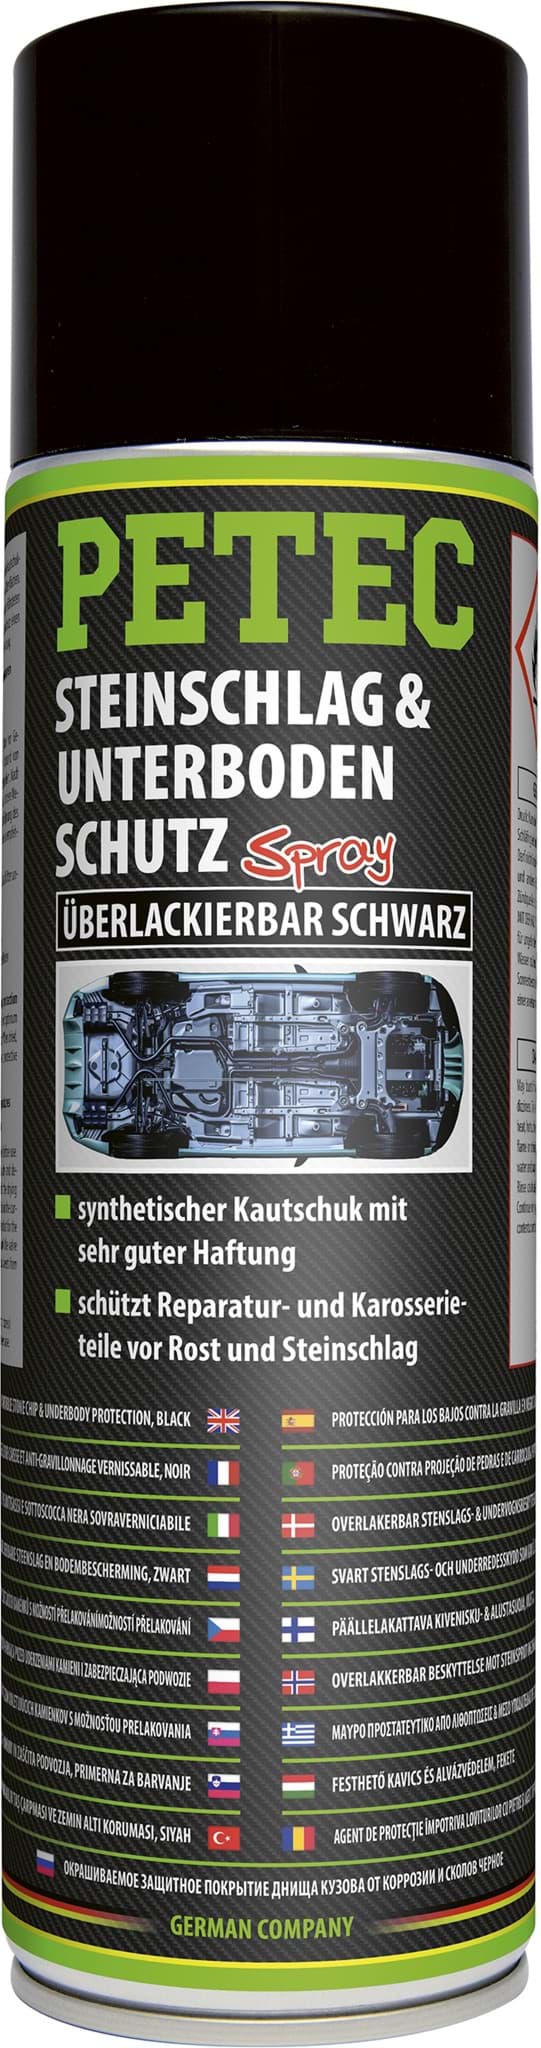 Picture of Petec Steinschlagschutz Unterbodenschutz Spray 500ml UBS schwarz überlackierbar